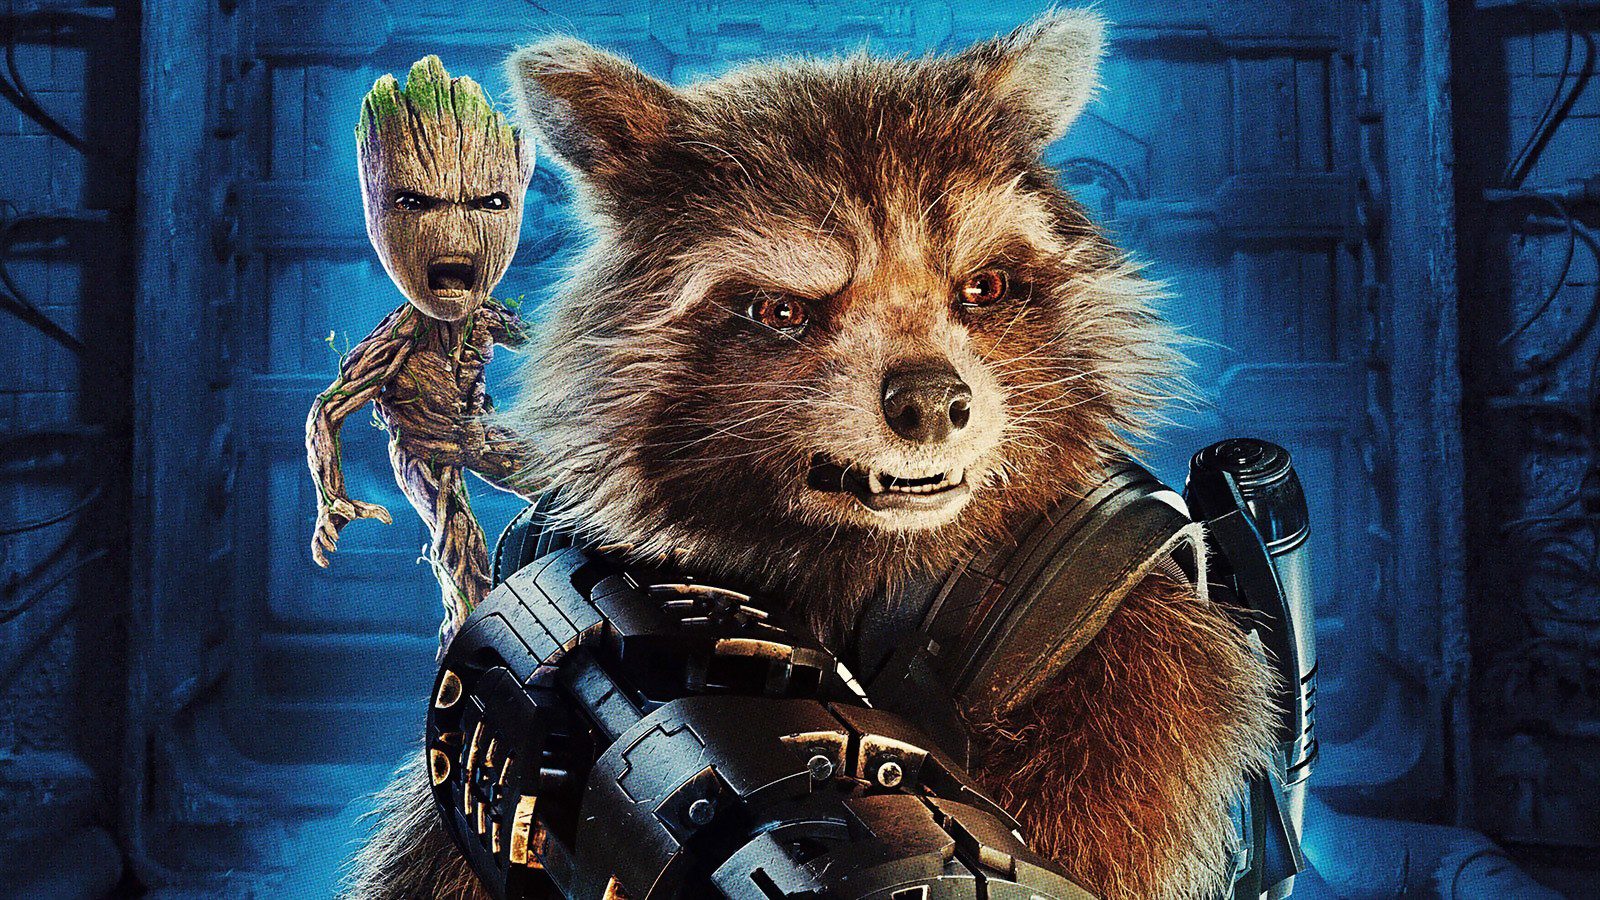 Rocket Raccoon revelará su pasado en Guardians of the Galaxy 3